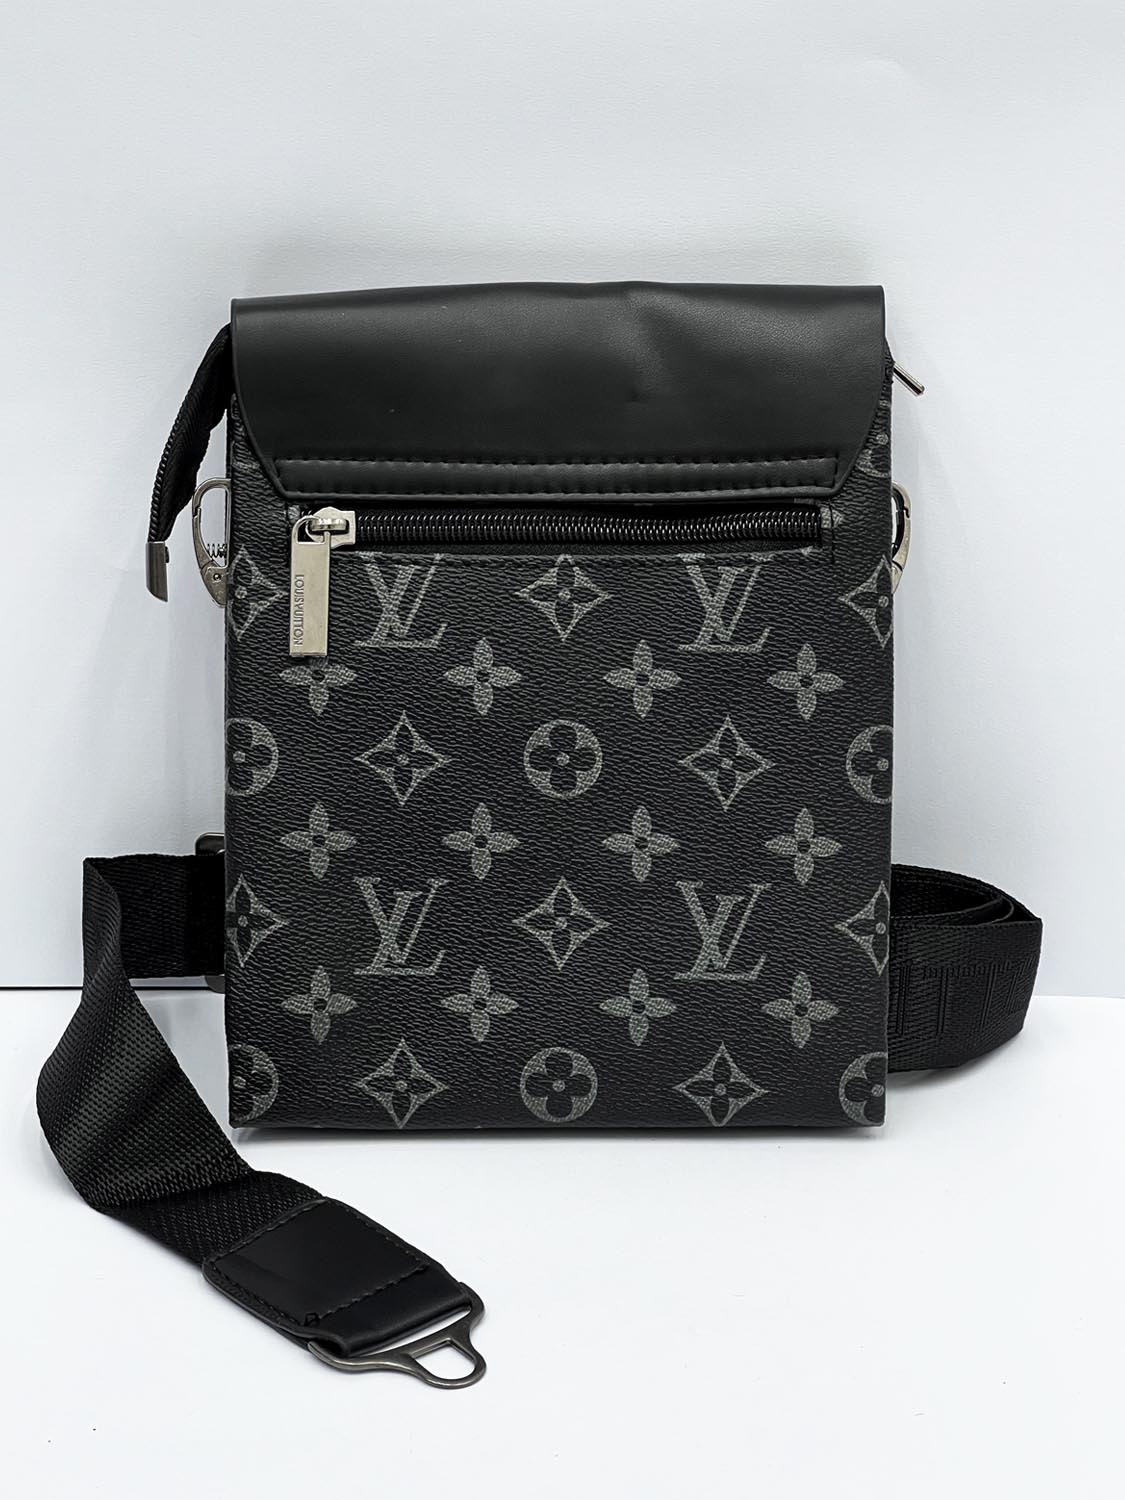 Lus Vtn All Over Logo Cross Body Bag in Black